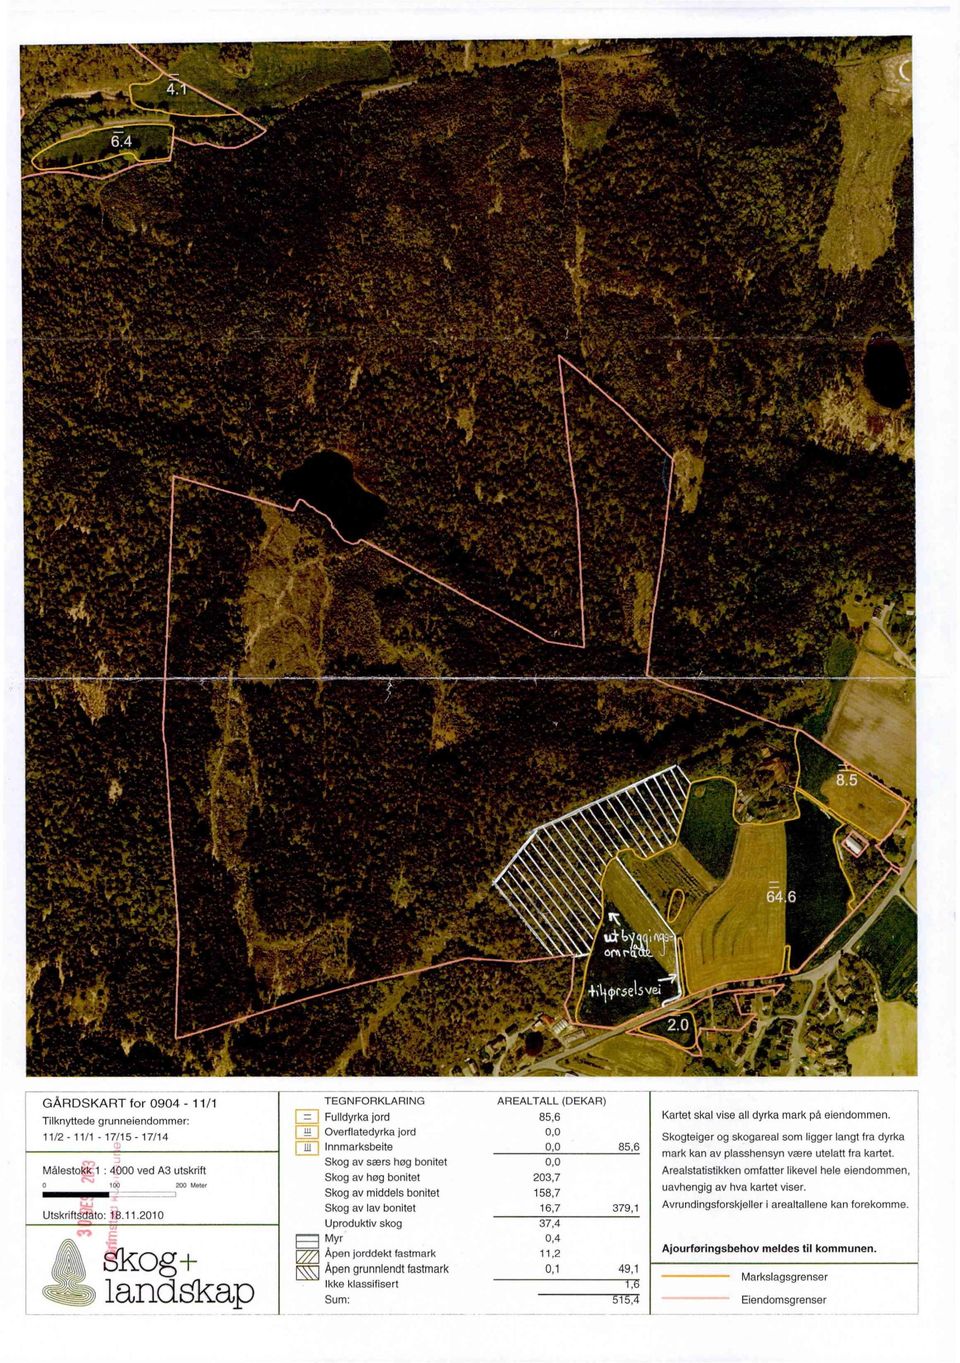 Skog av særs hog bonitet 0,0 Arealstatistikken omfatter likevel hele eiendommen. Skog av hog bonitet 203,7 uavhengig av hva kartet viser.